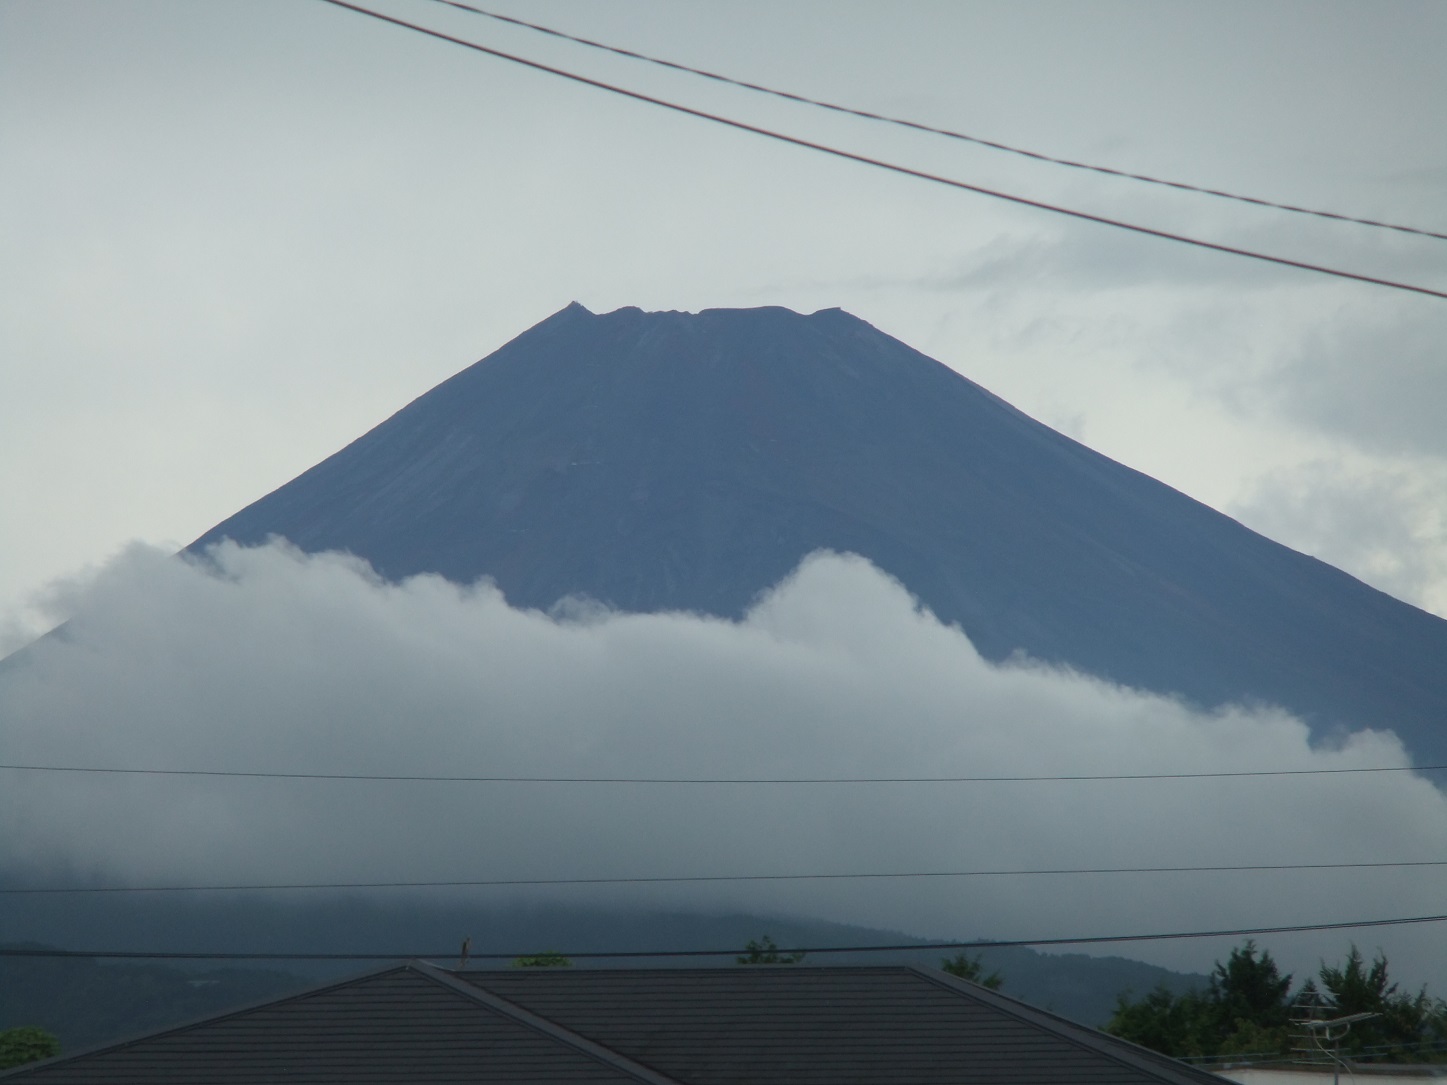 富士山4.9.8